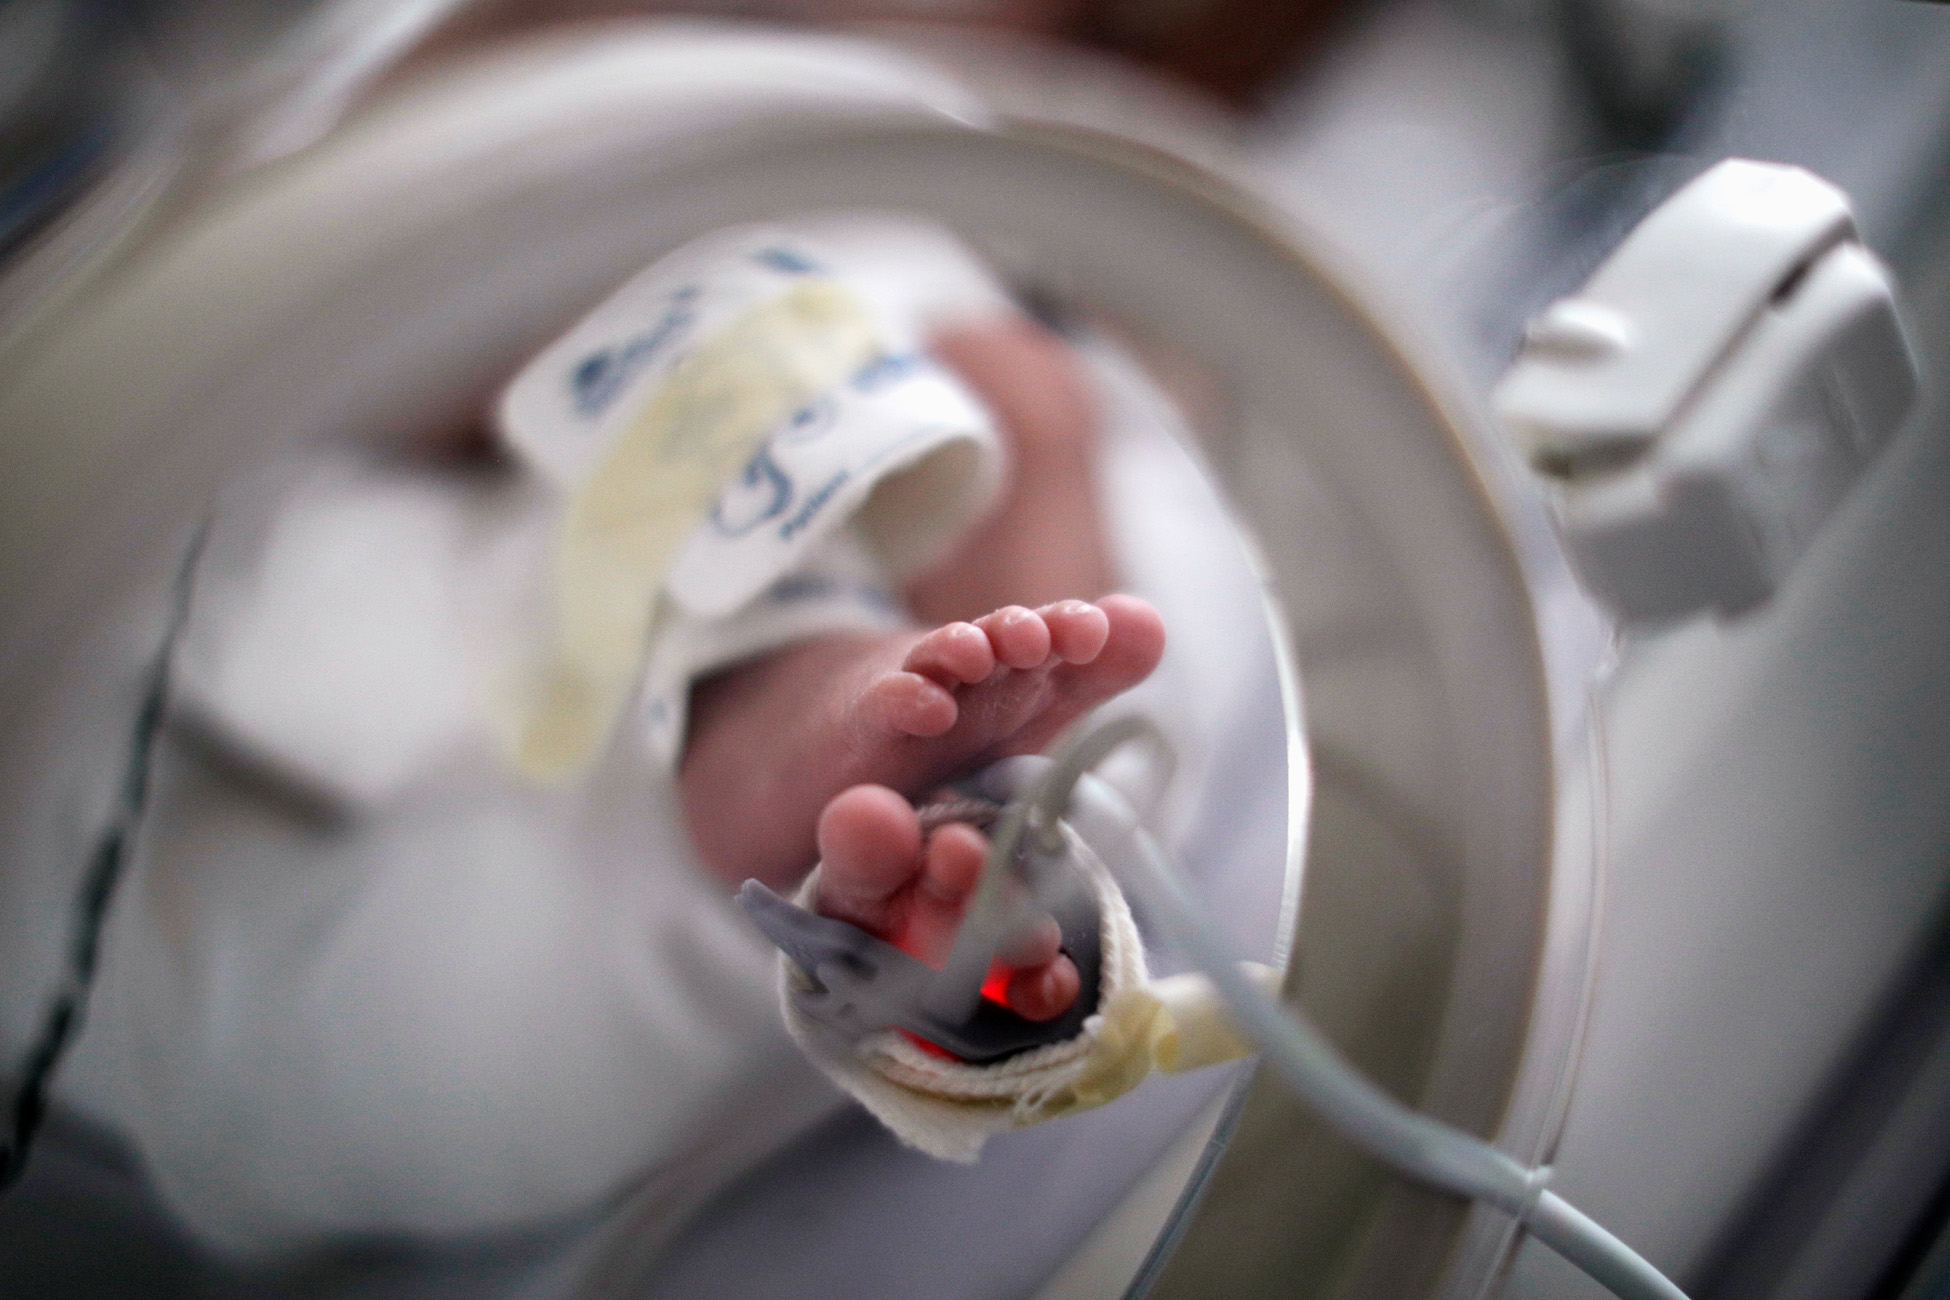 Νεογέννητο πνίγηκε με το γάλα του και πέθανε μέσα στο νοσοκομείο